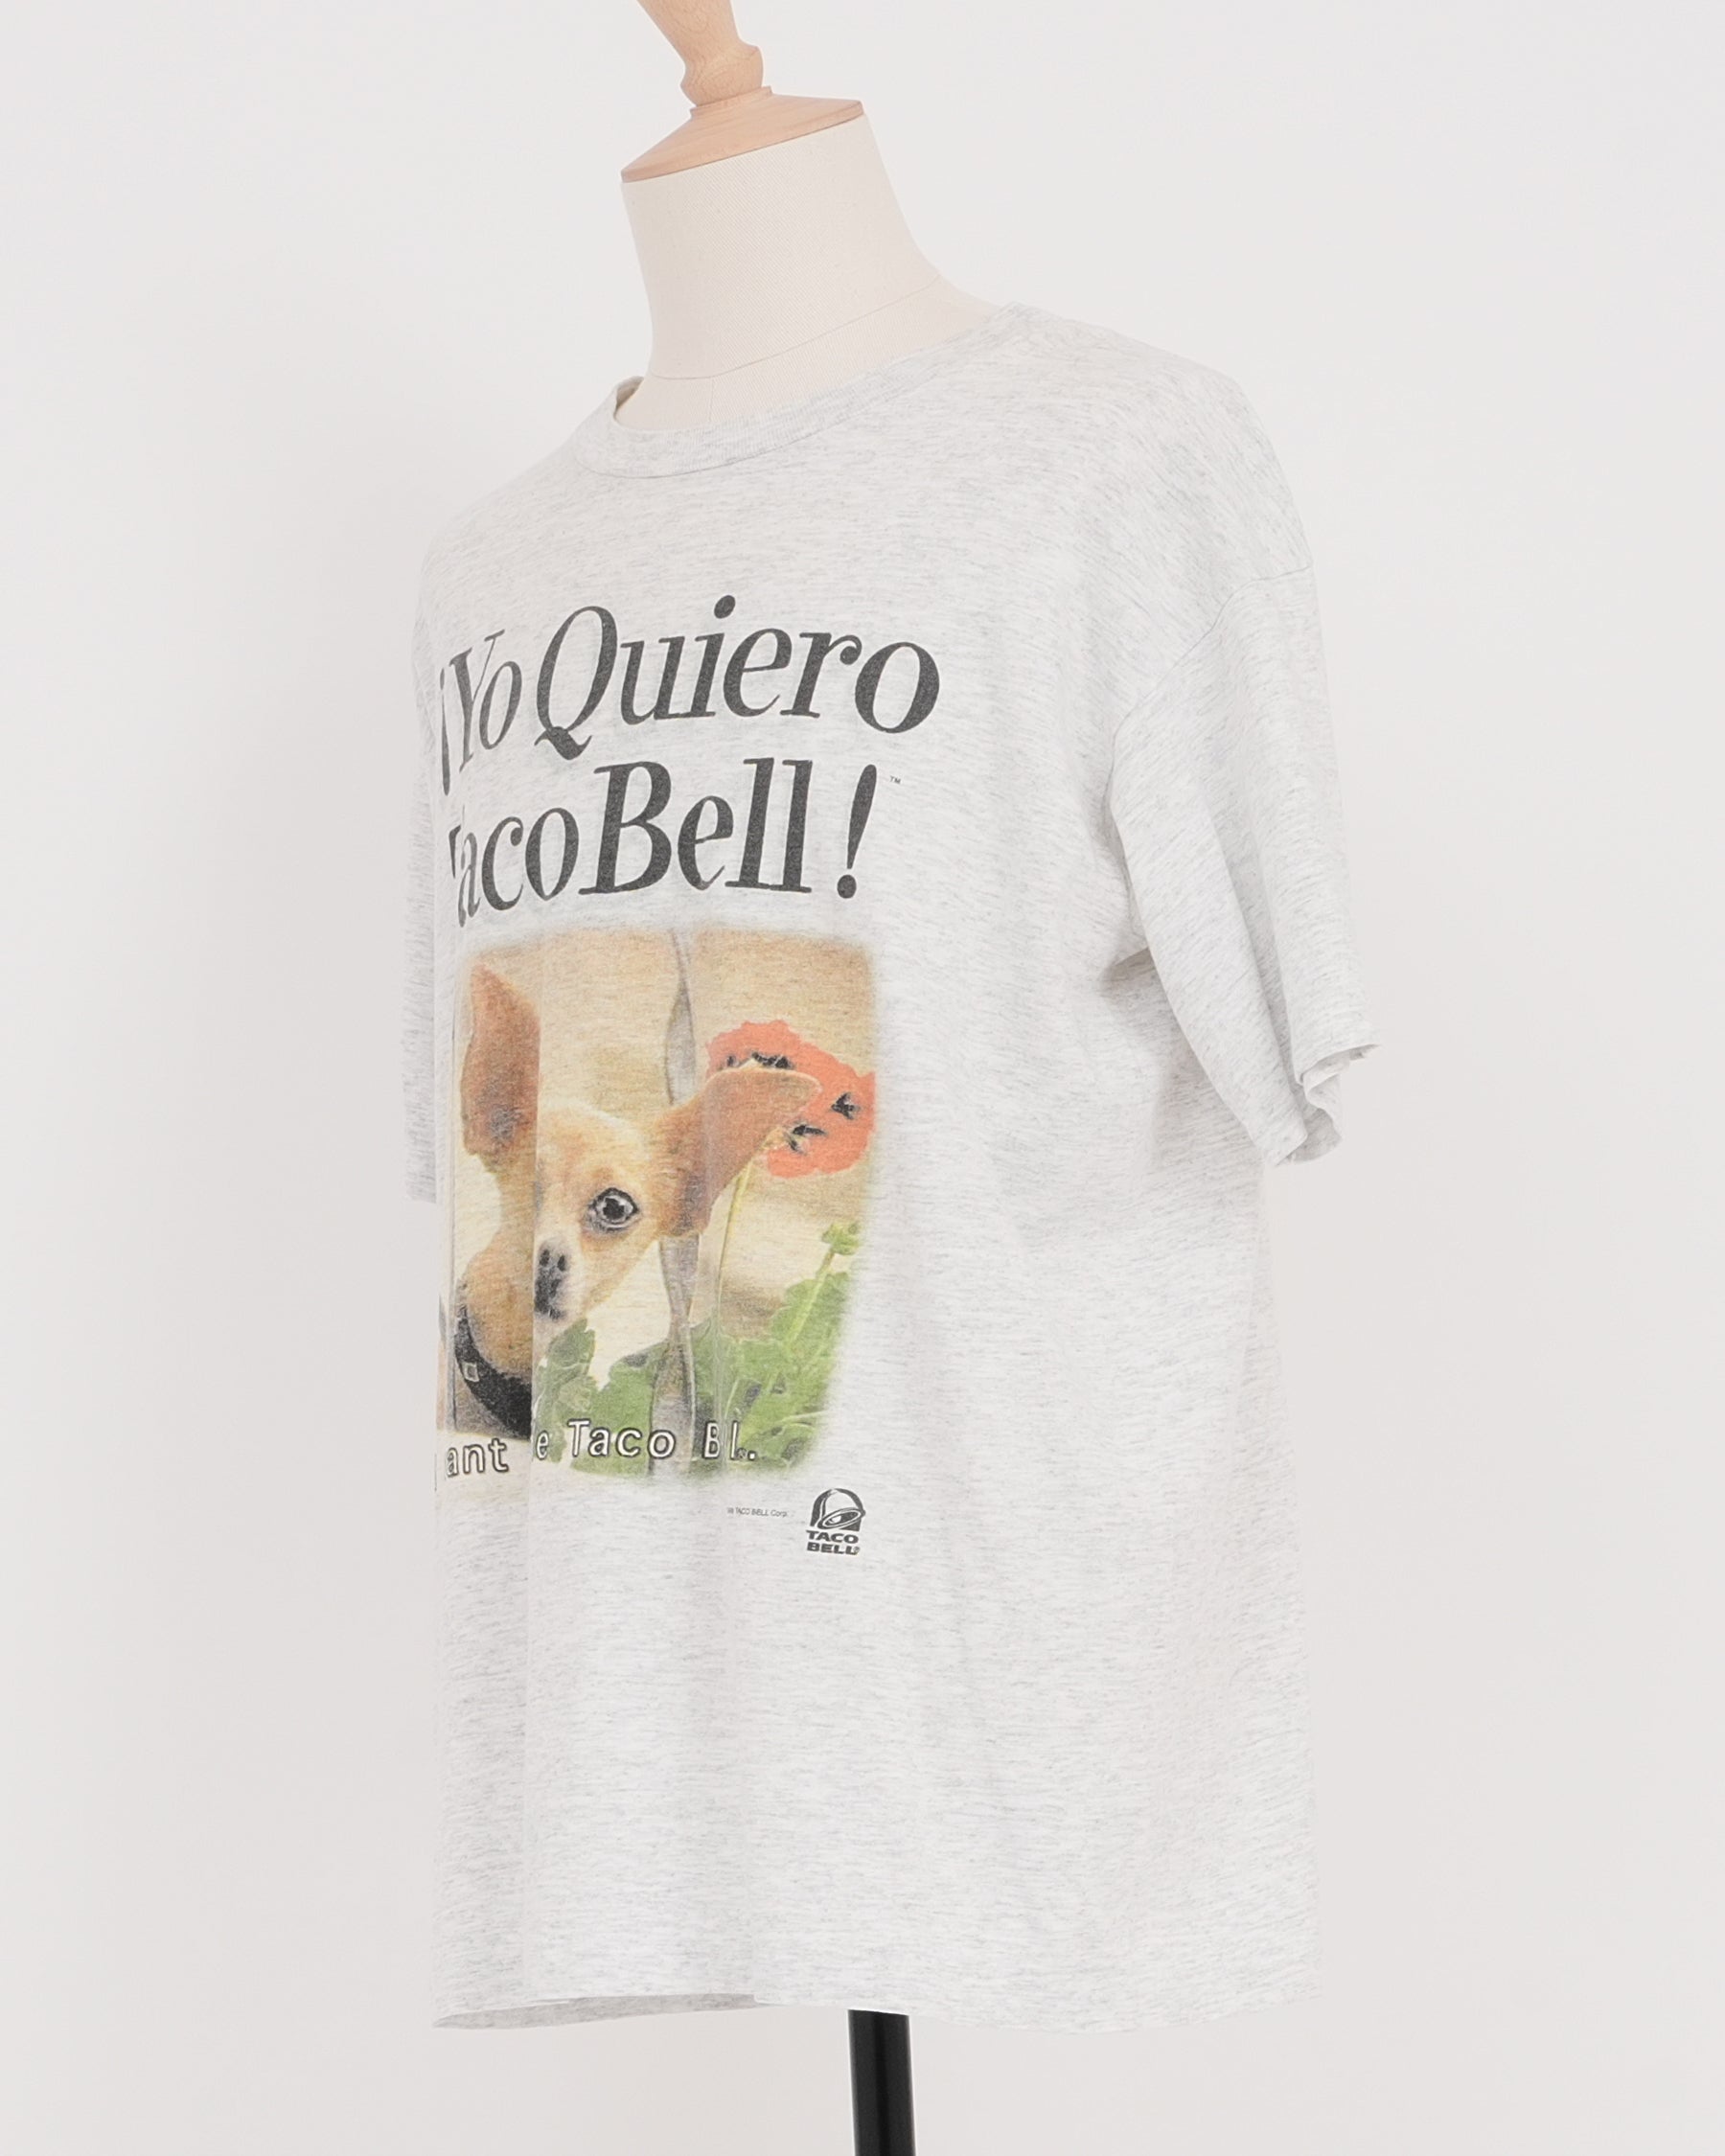 Taco Bell T-shirt